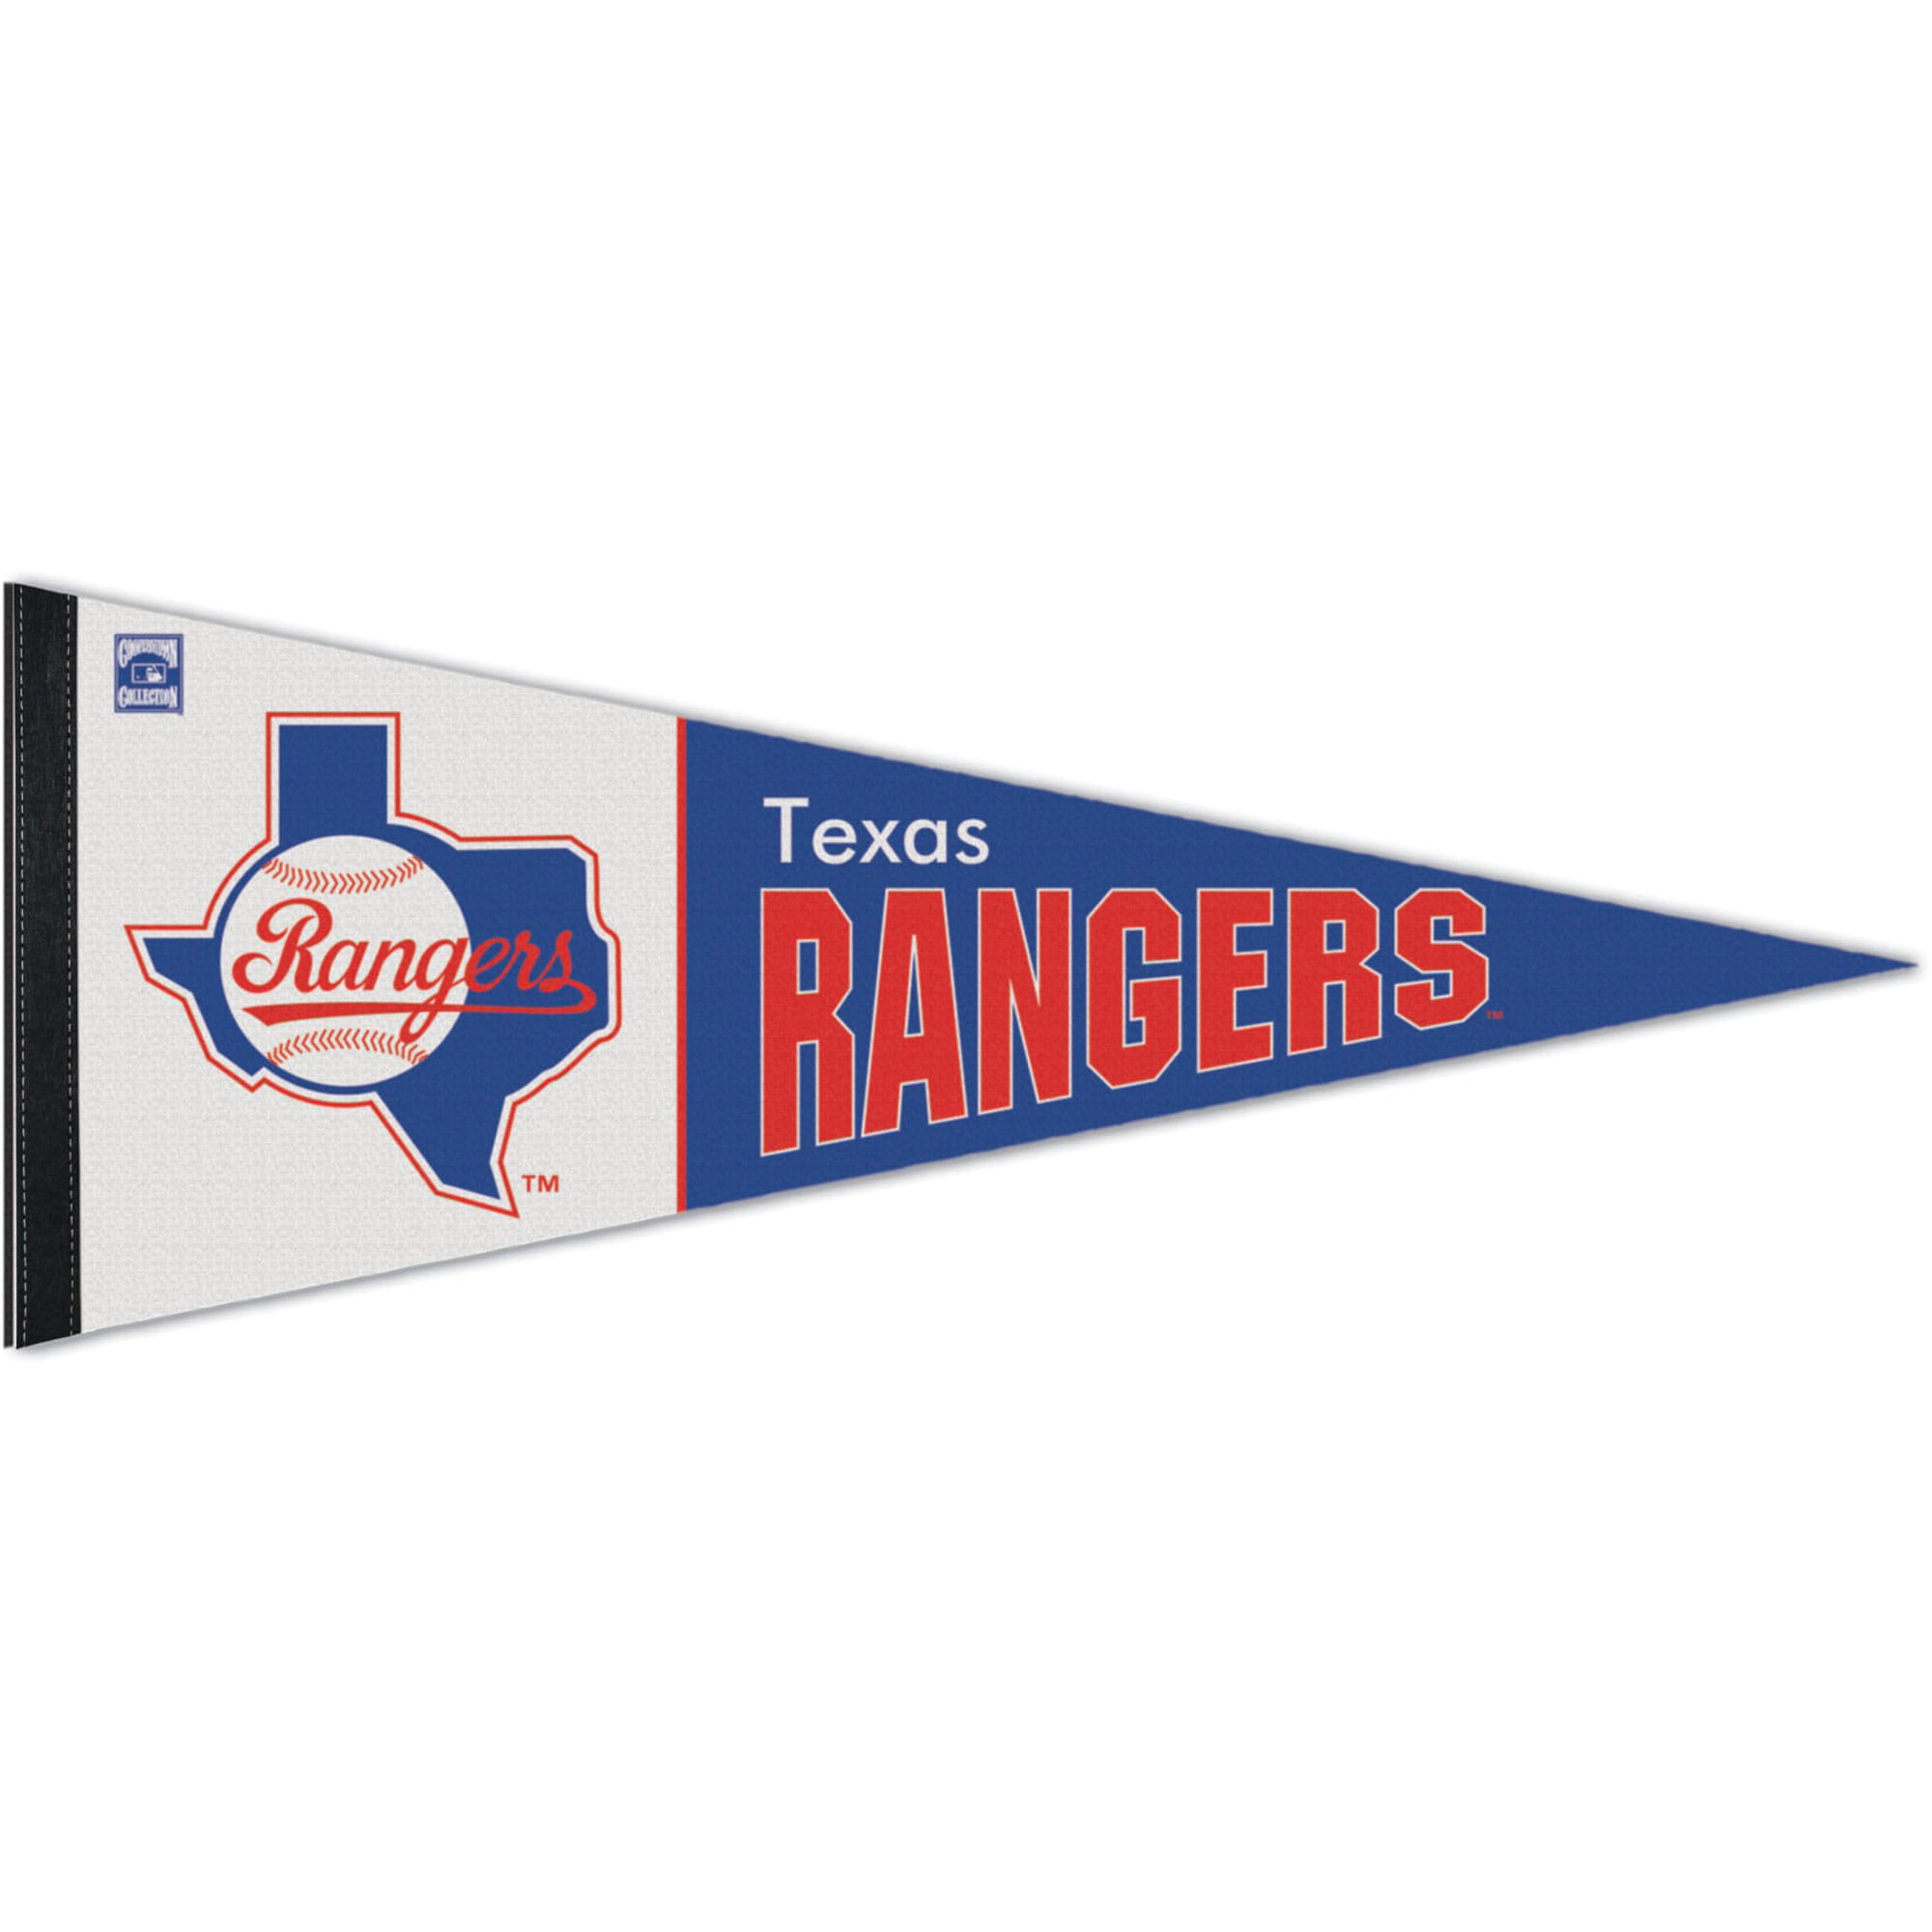 Texas Rangers Lanyard 2016 